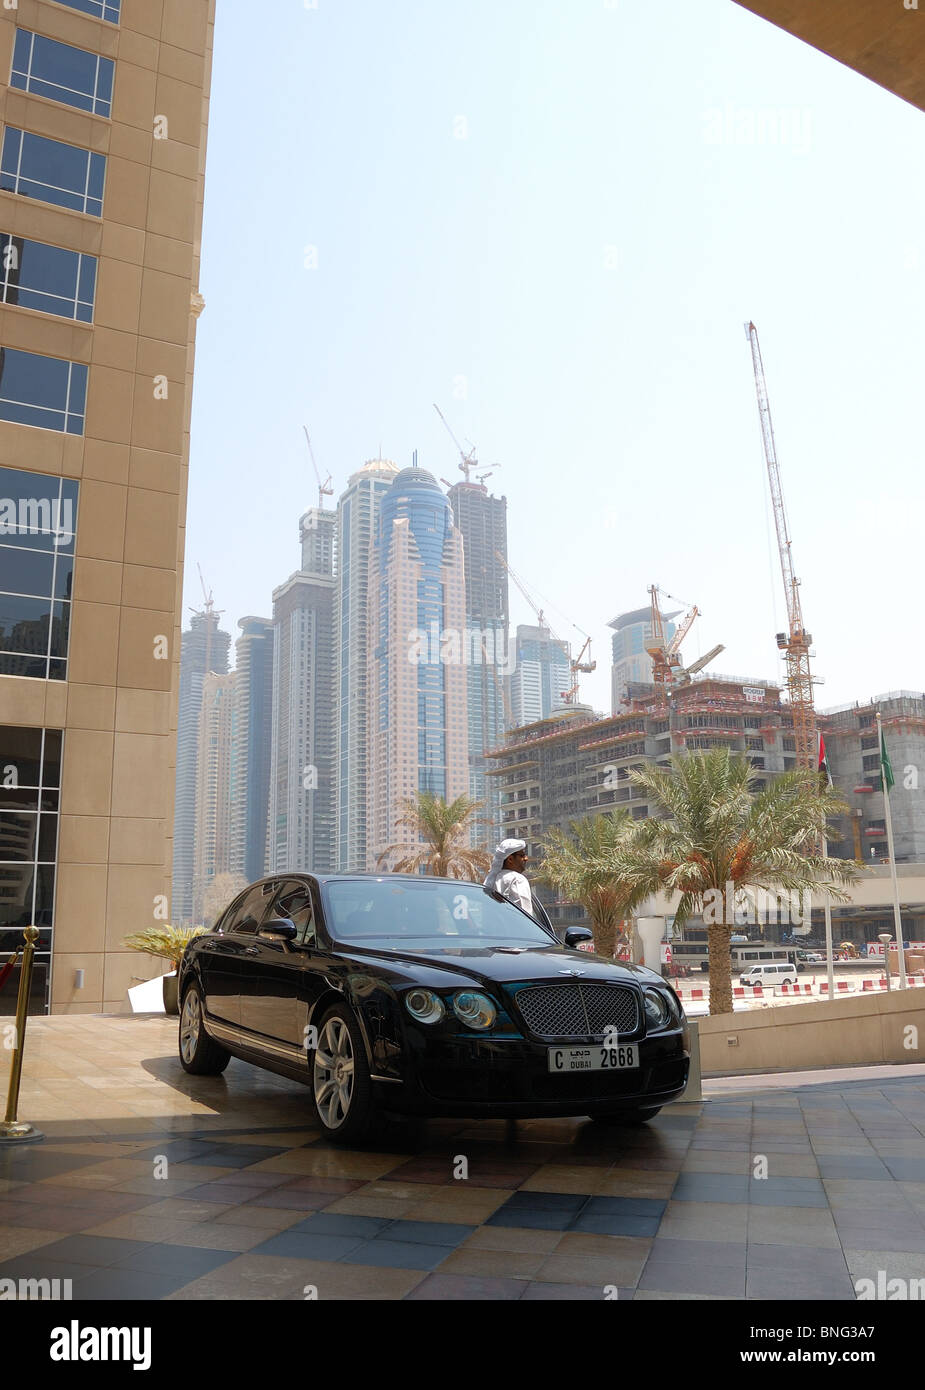 Limousine at parking area of luxury hotel, Dubai, United Arab Emirates Stock Photo